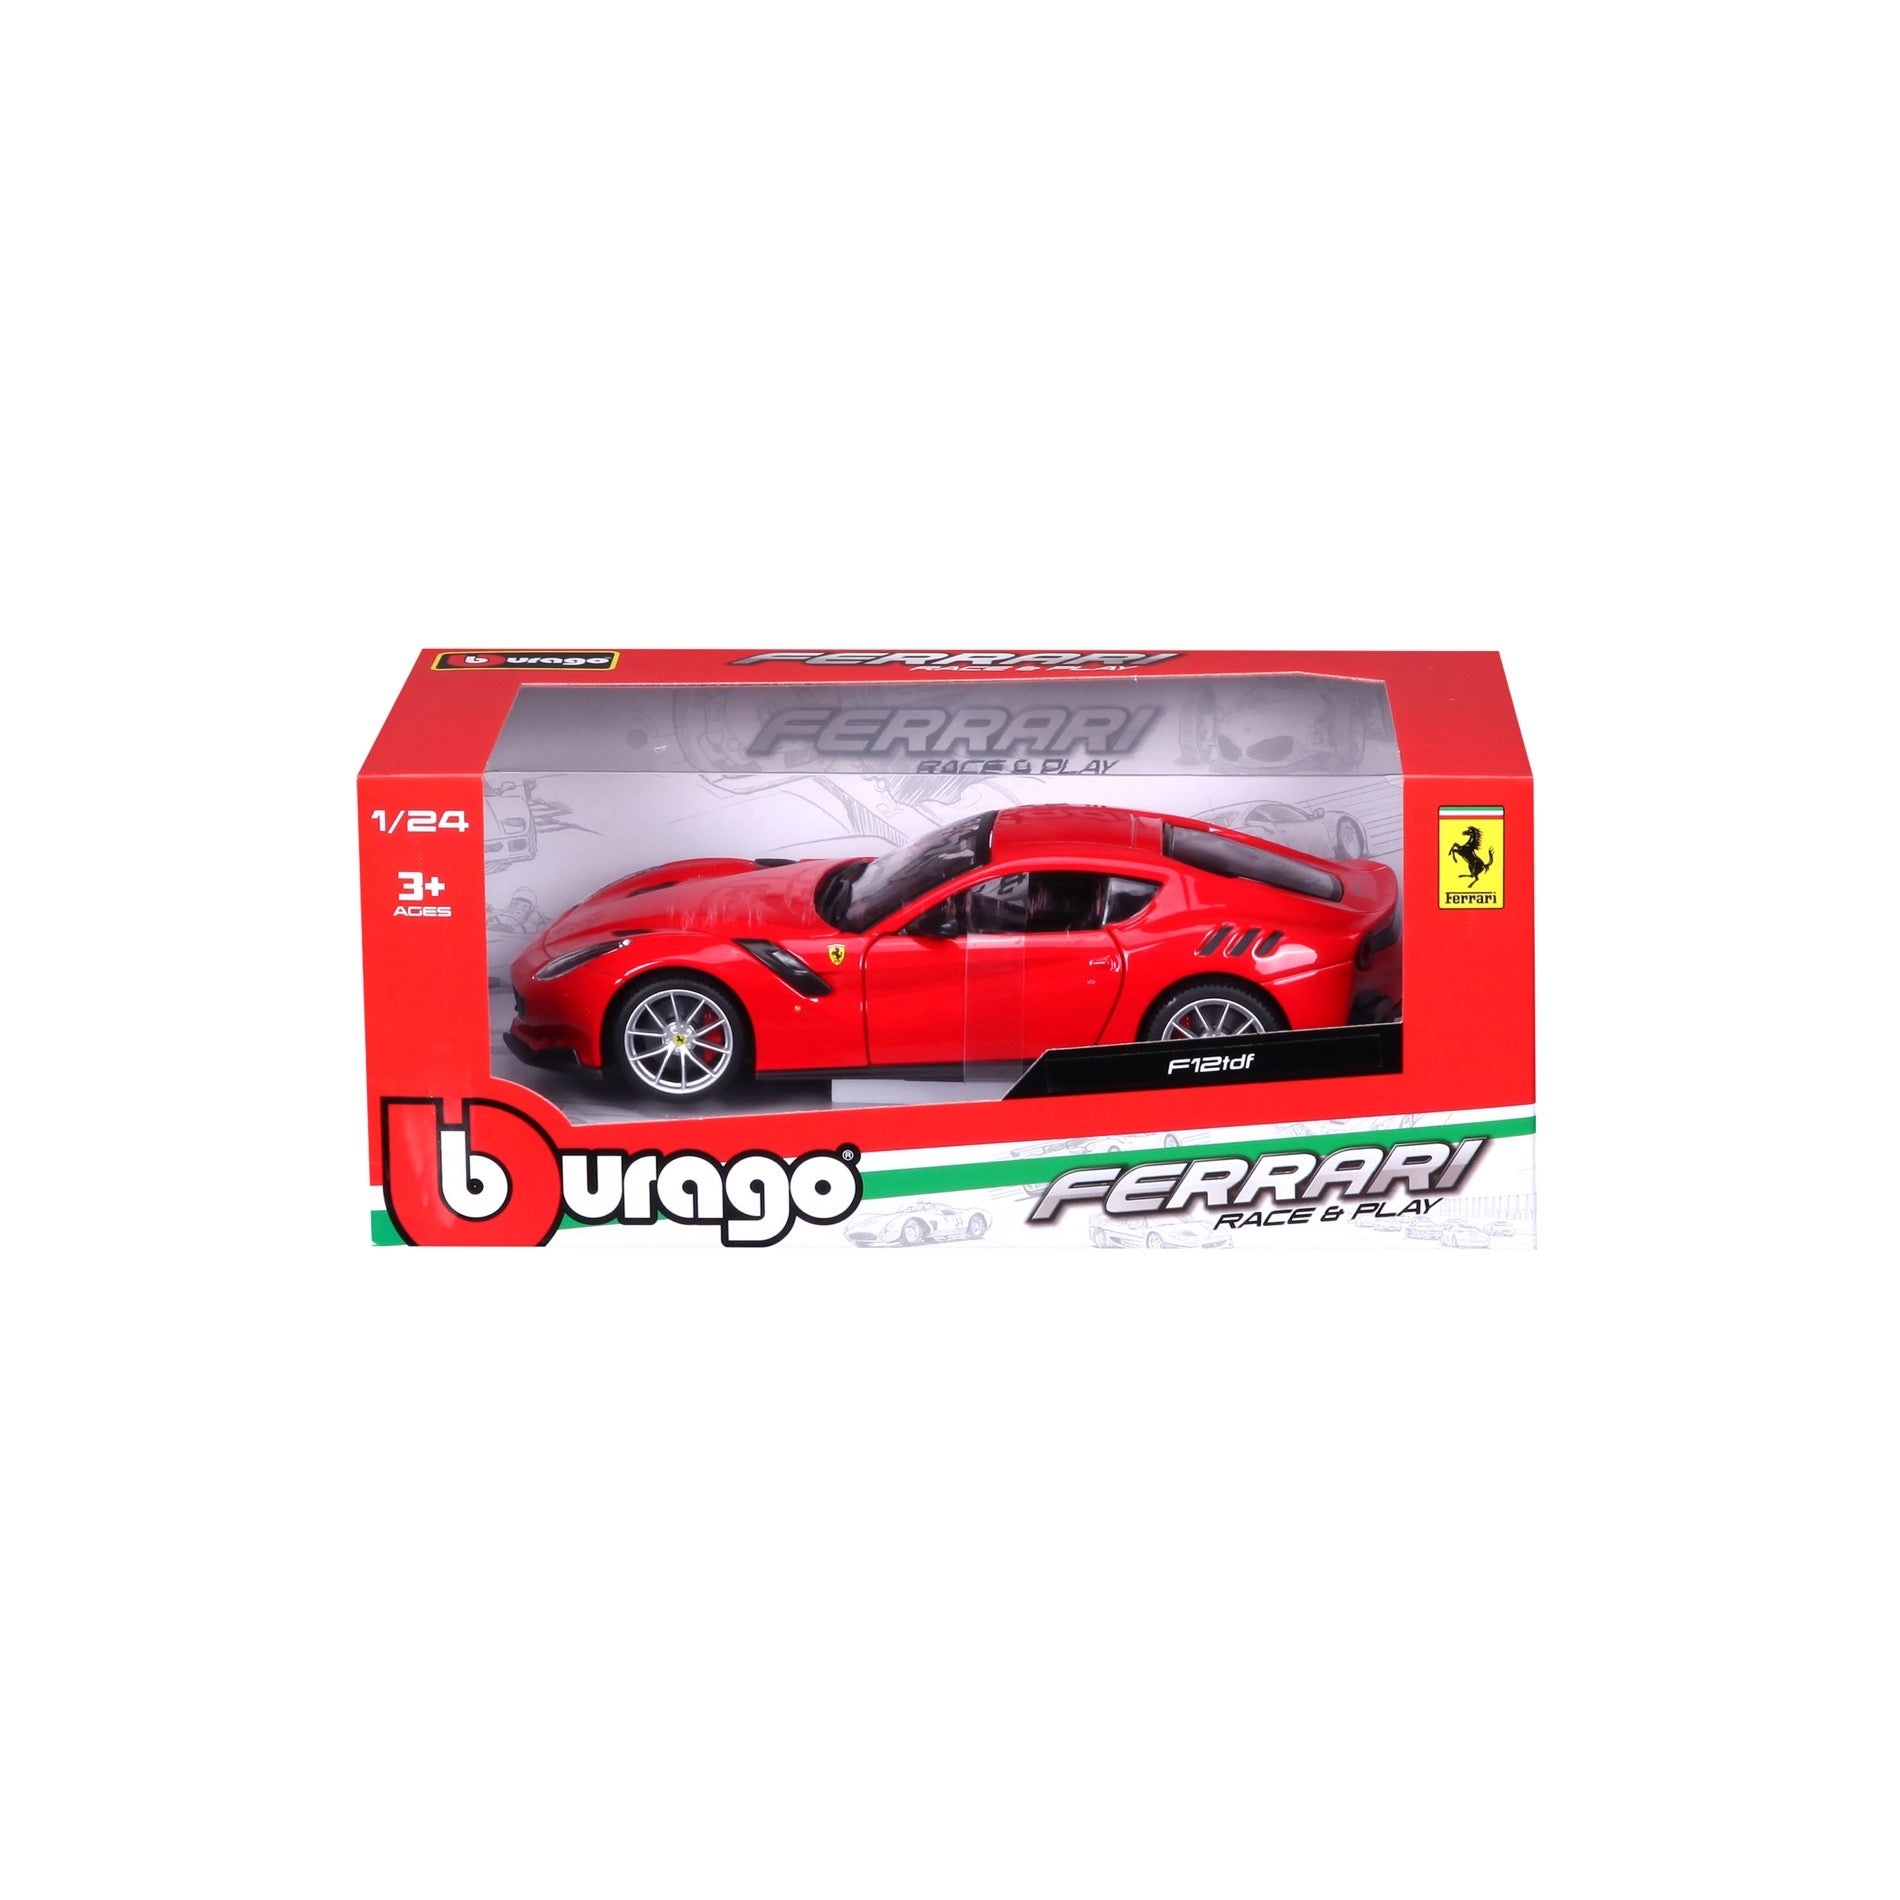 18-26021 Bburago Ferrari R&P F12 tdf - Rosso - 1:24